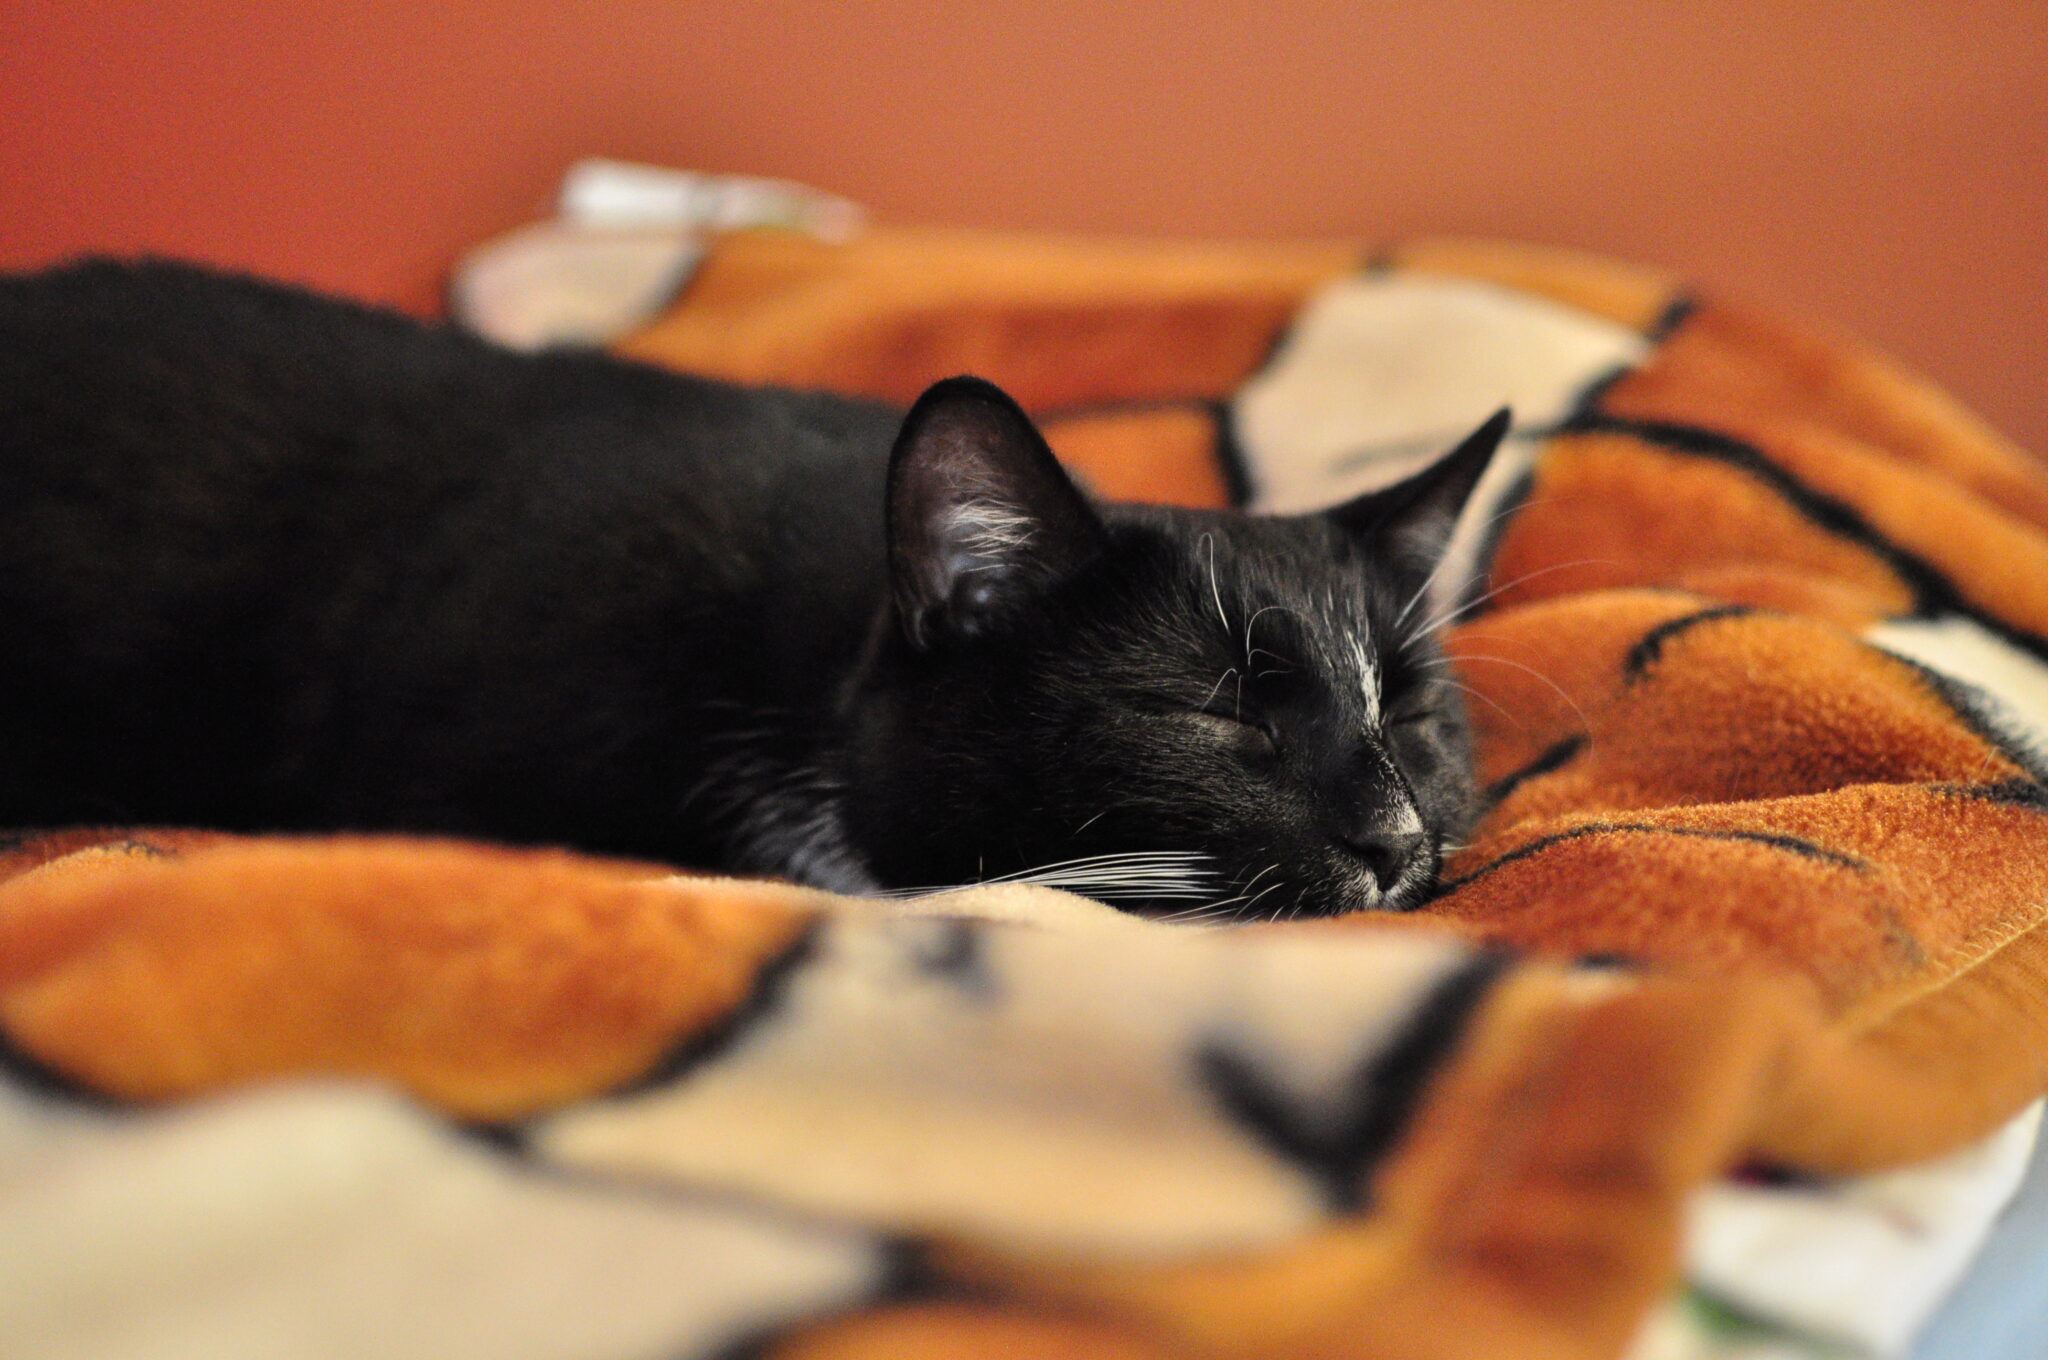 Slaapt Uw Kat In De Kattenbak? Ontdek Waarom Uw Kat In De Kattenbak Slaapt!